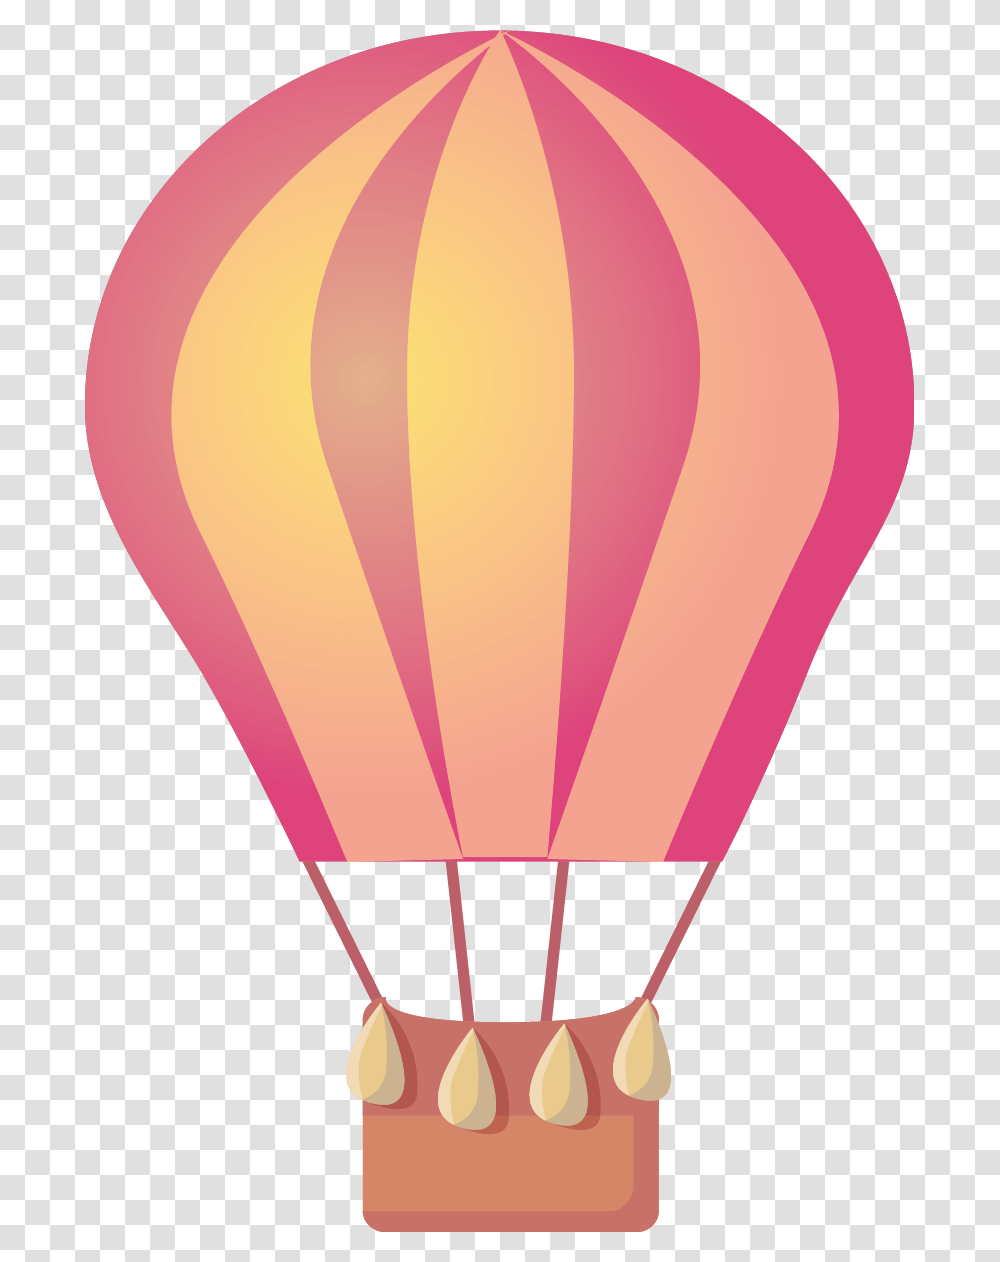 Hot Air Balloon Download Hot Air Balloon, Aircraft, Vehicle, Transportation, Rug Transparent Png